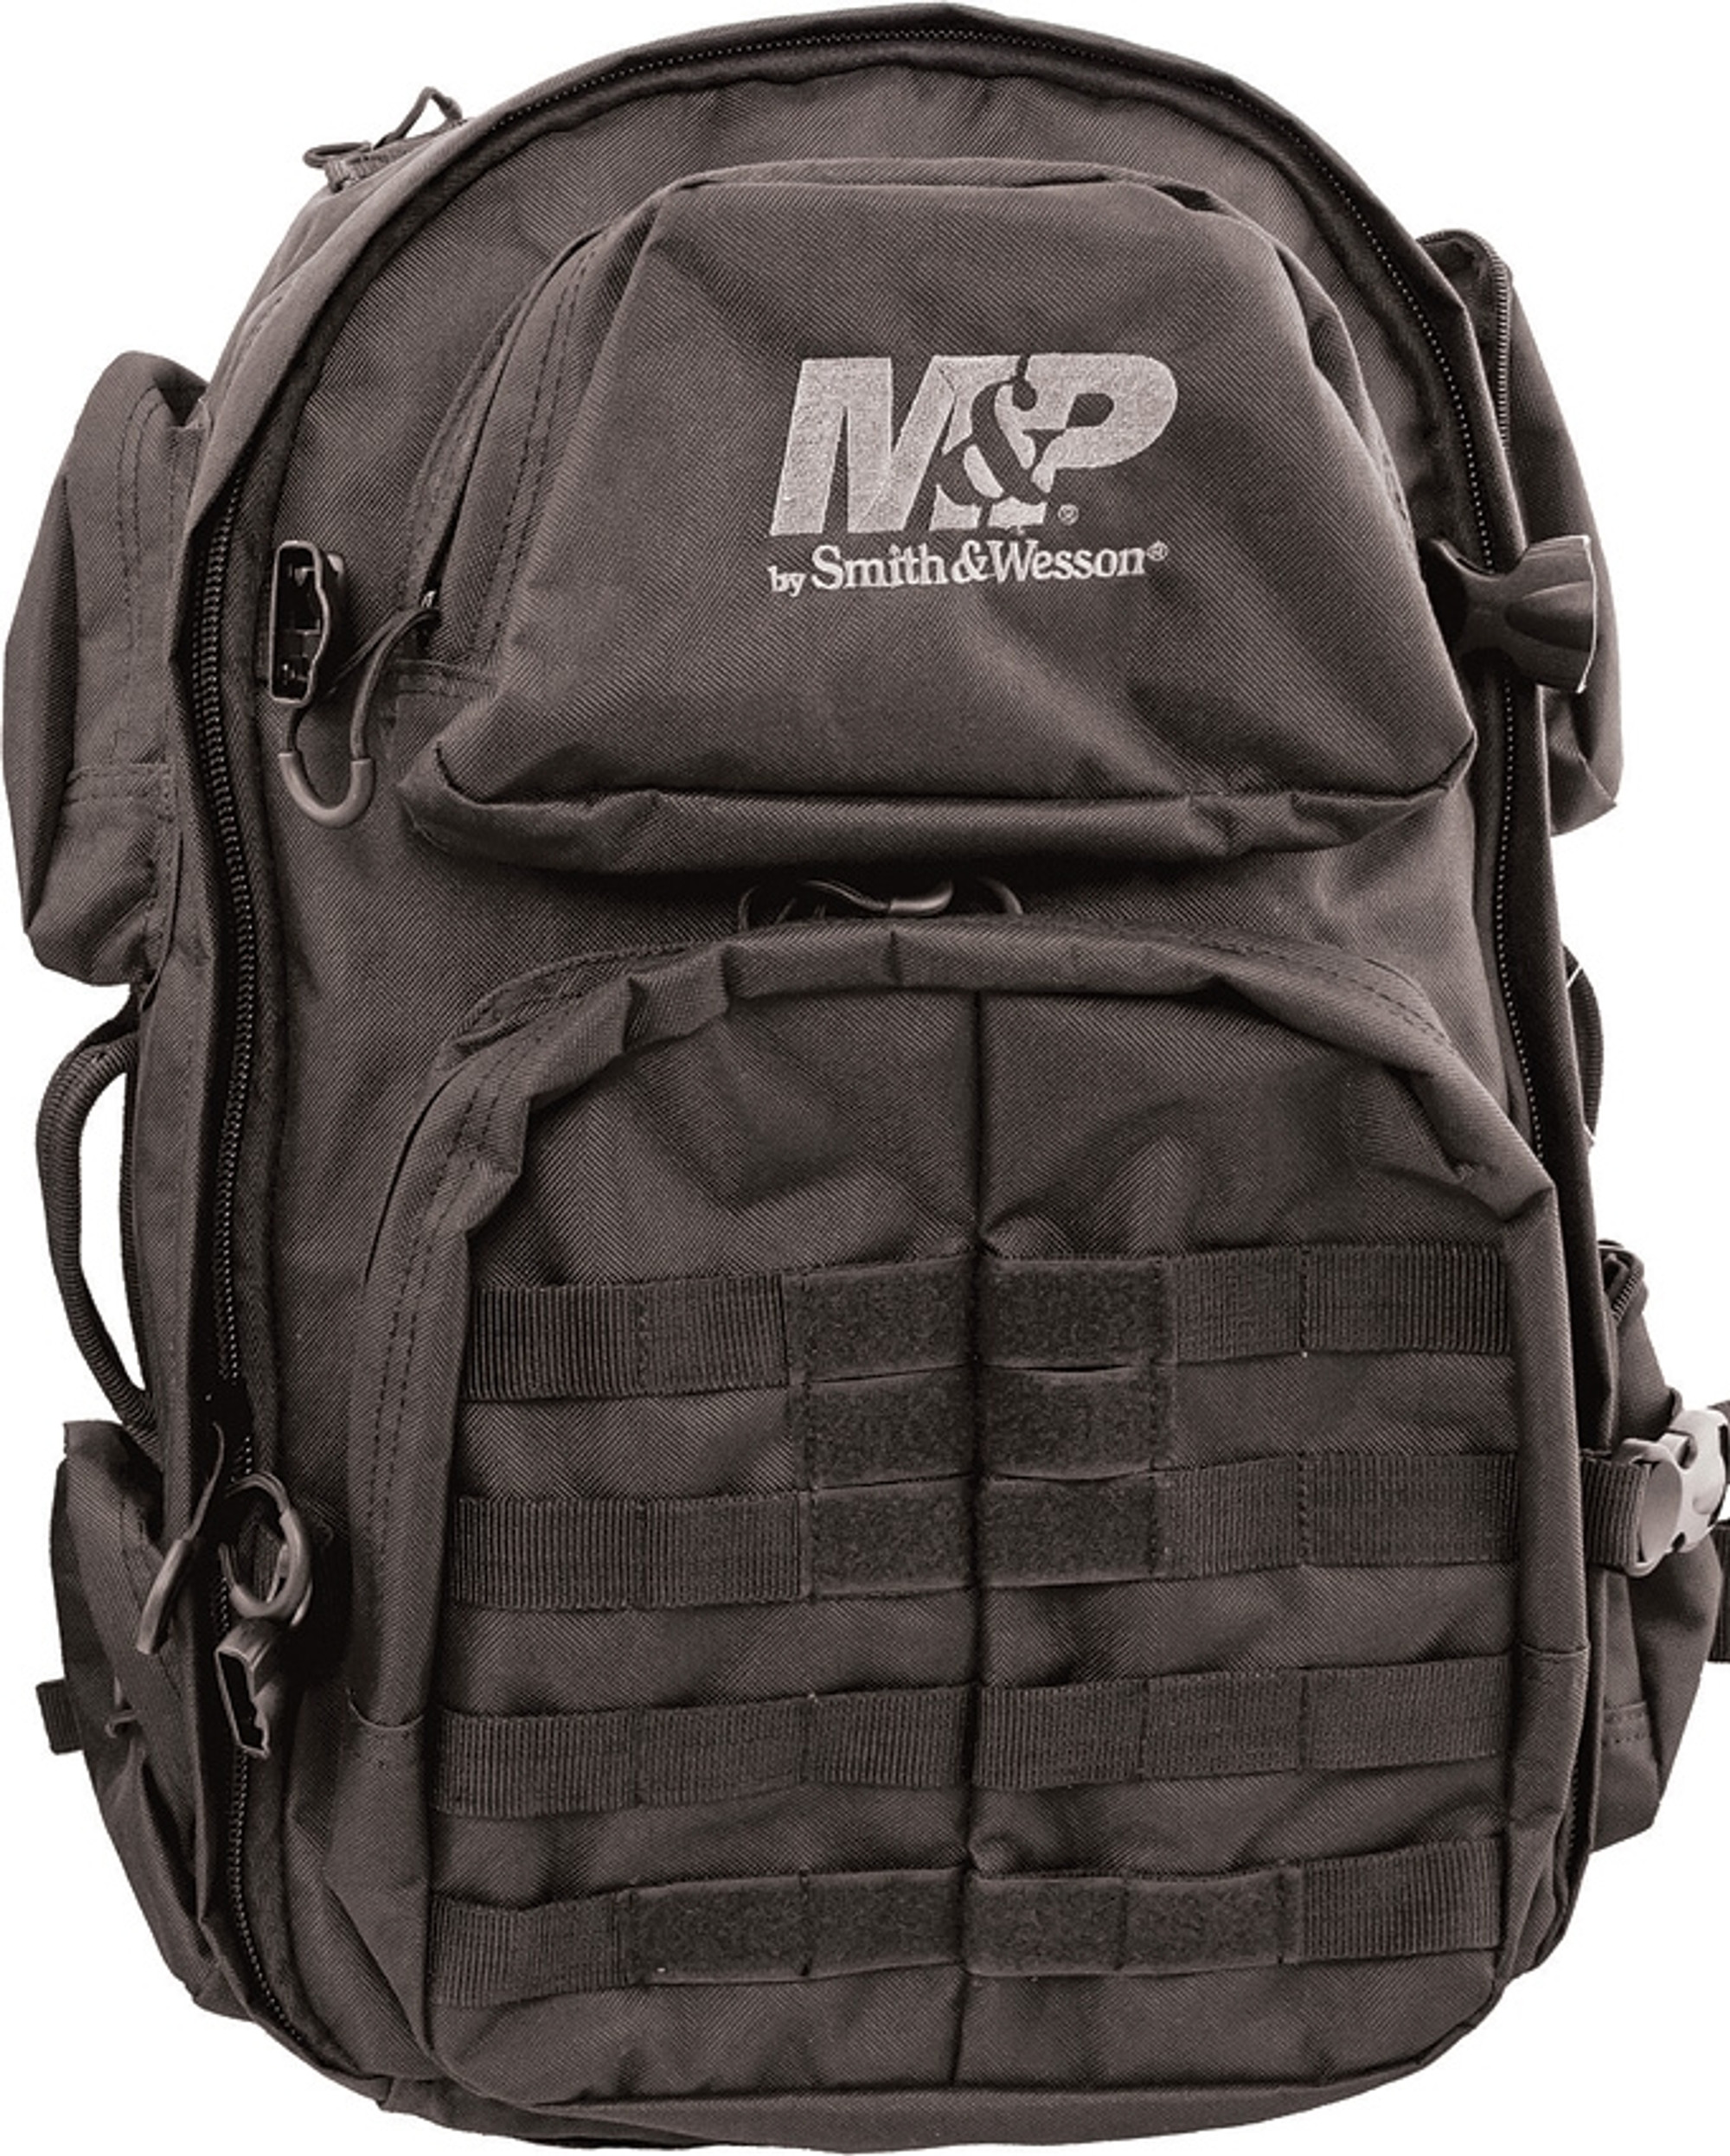 Pro Tac Backpack